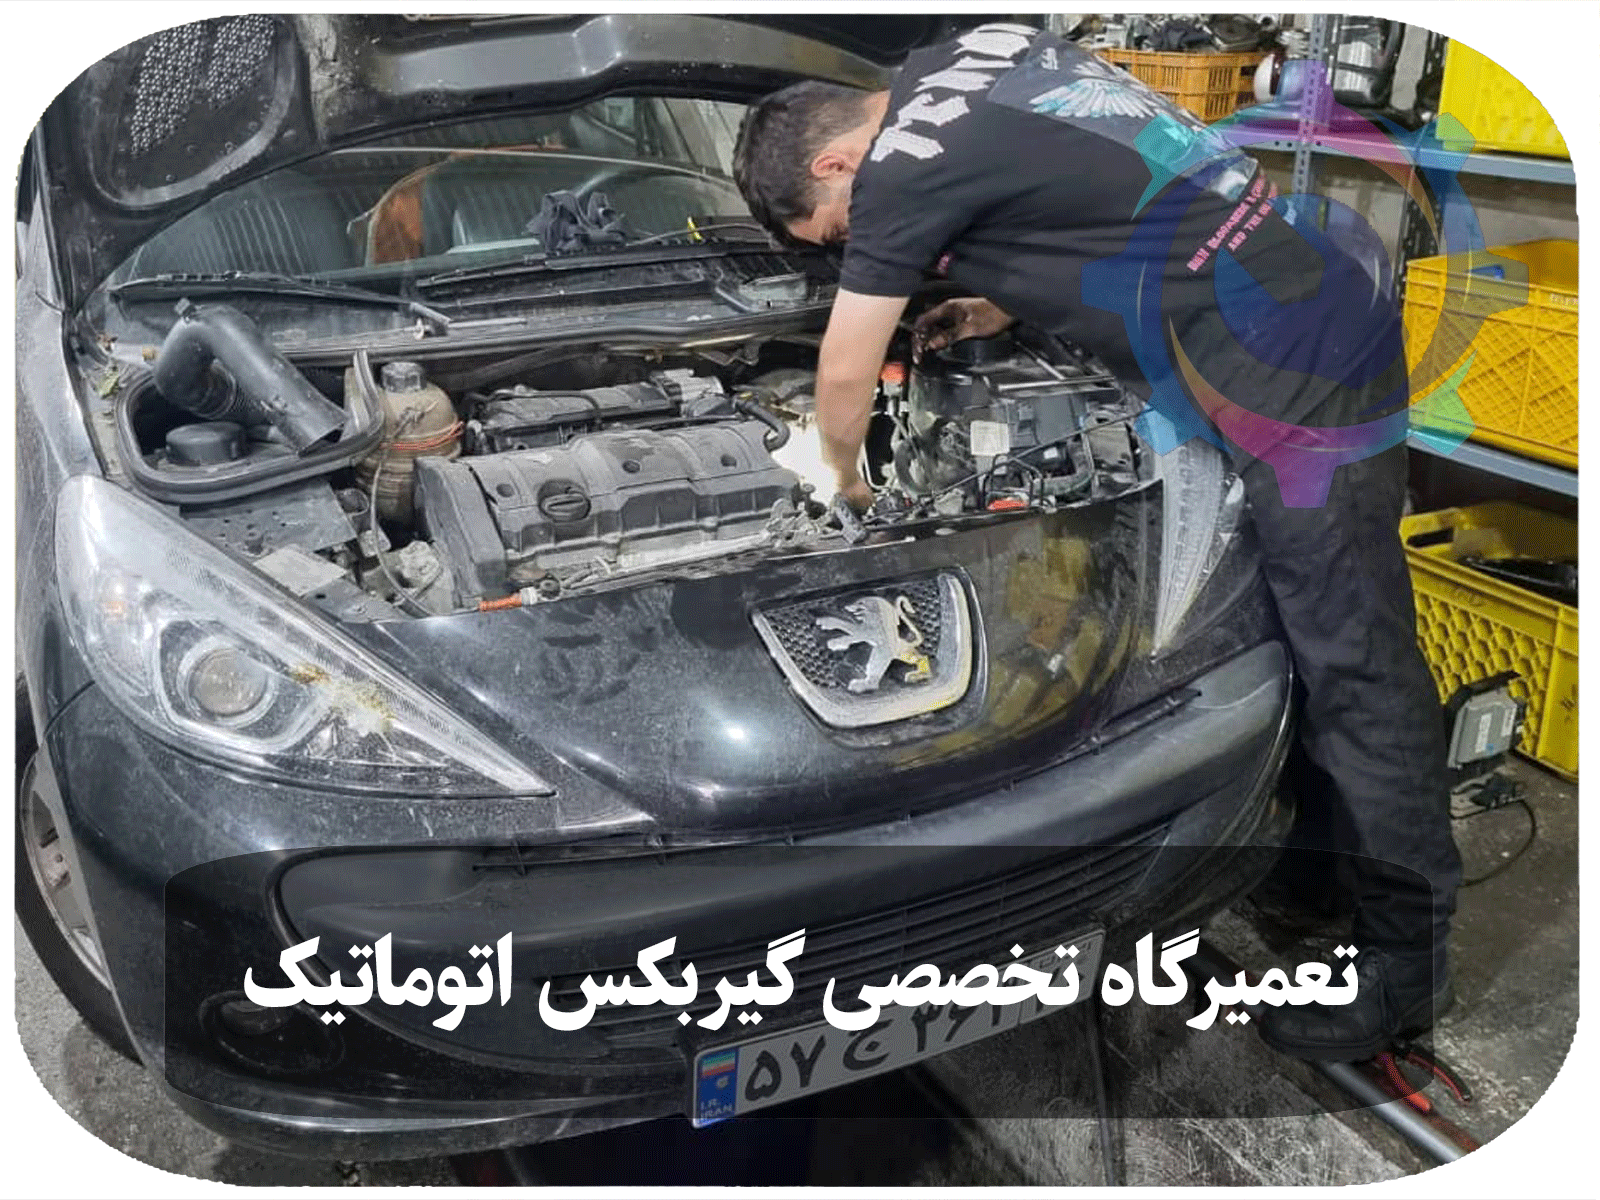 مکانیک در حال تعمیر گیربکس اتوماتیک خودروی پژو 207 در یک کارگاه تخصصی تعمیرات خودرو